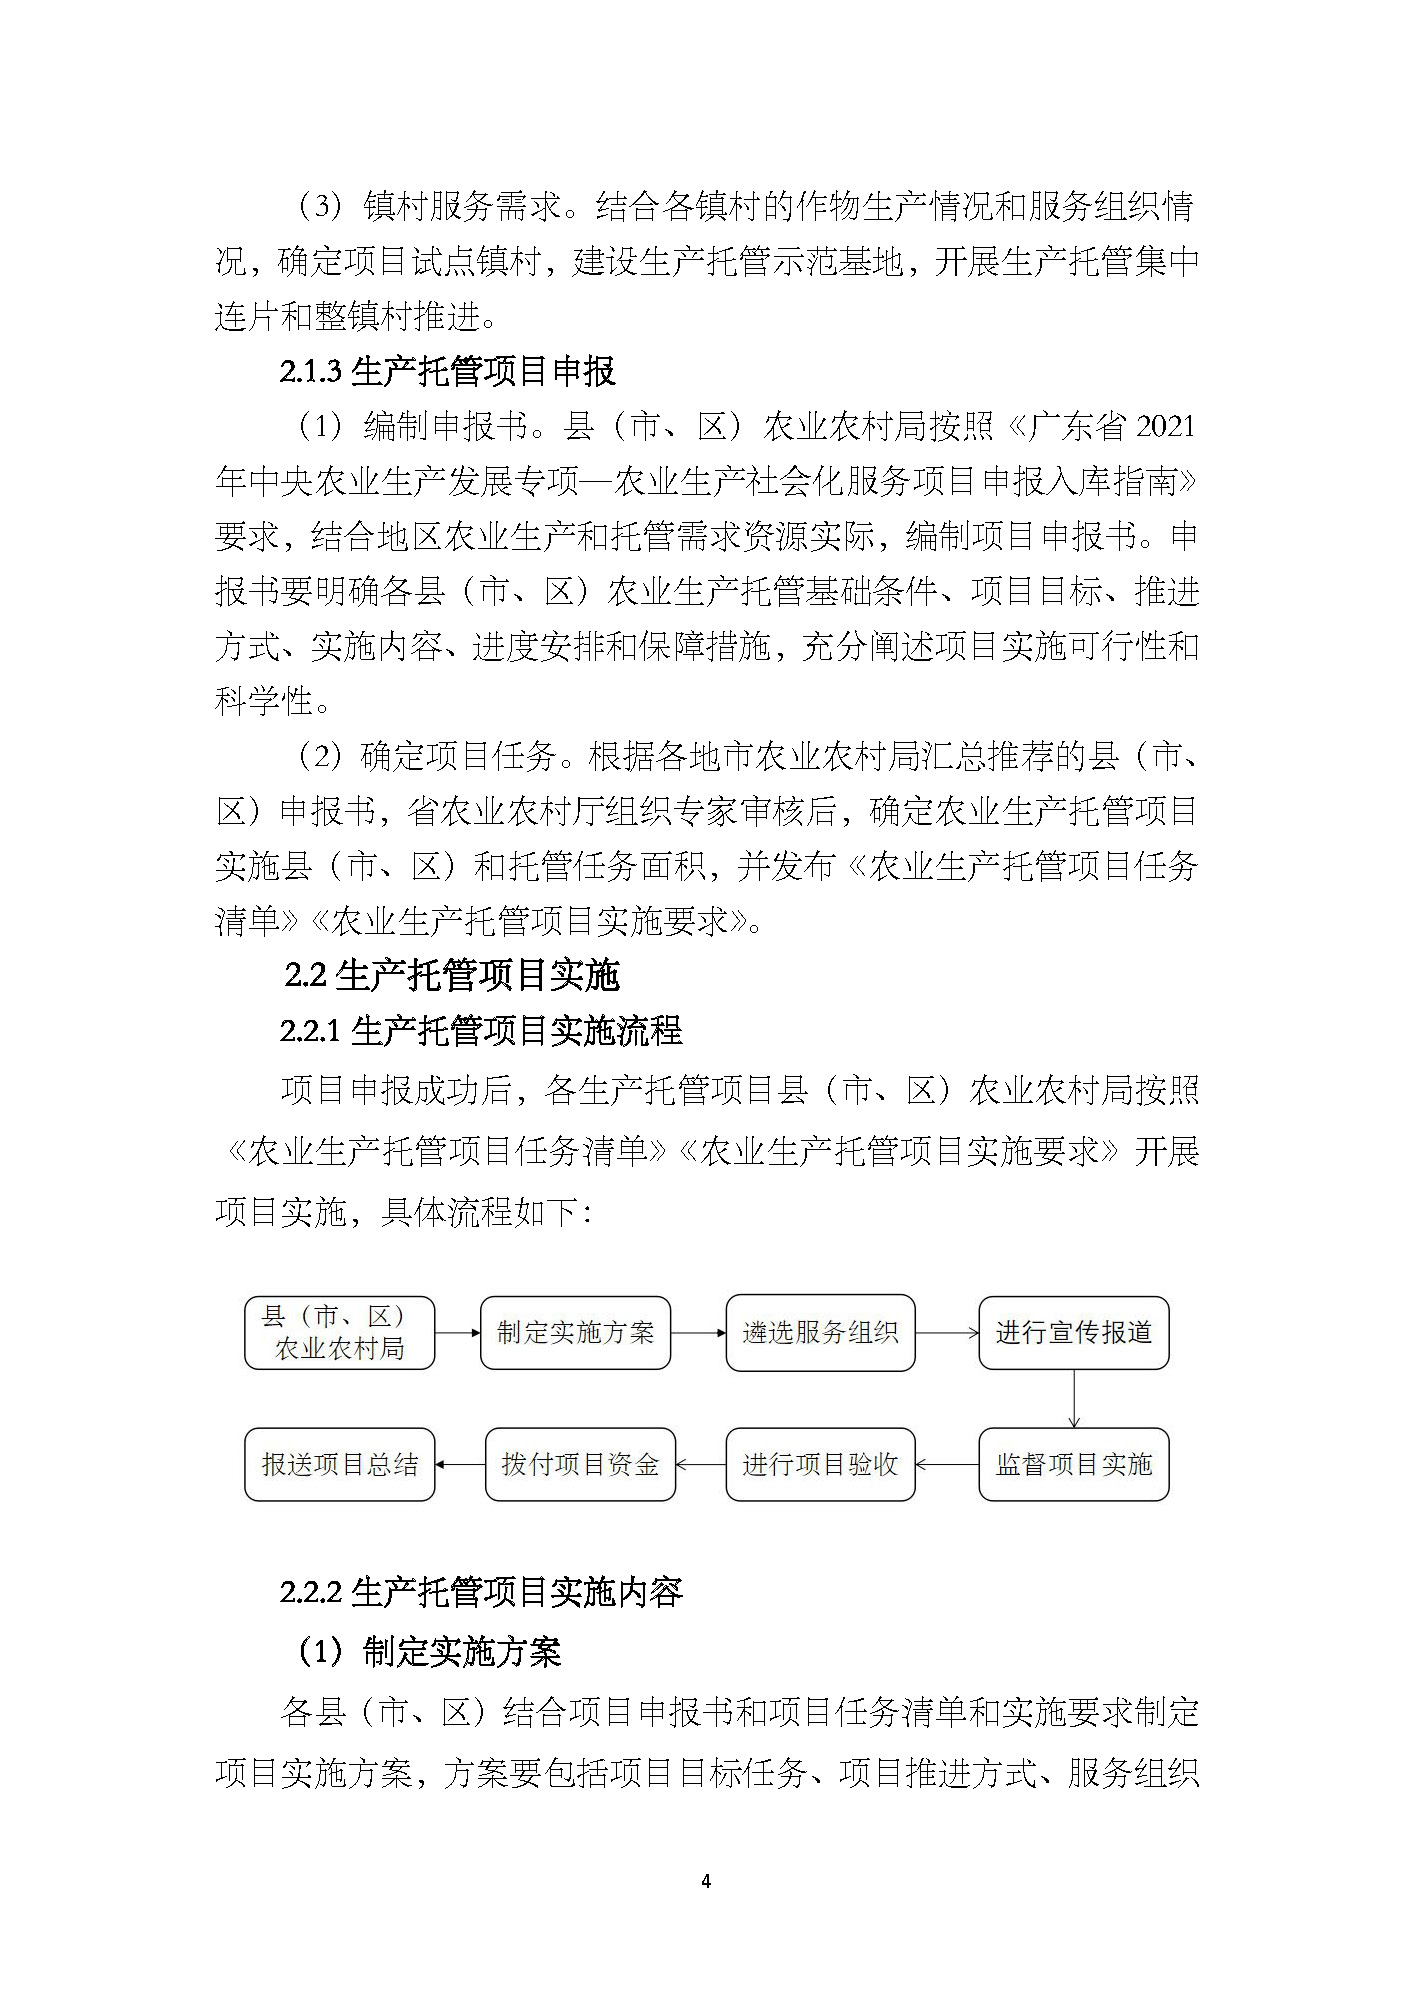 1.广东省农业生产托管服务工作手册_页面_06.jpg